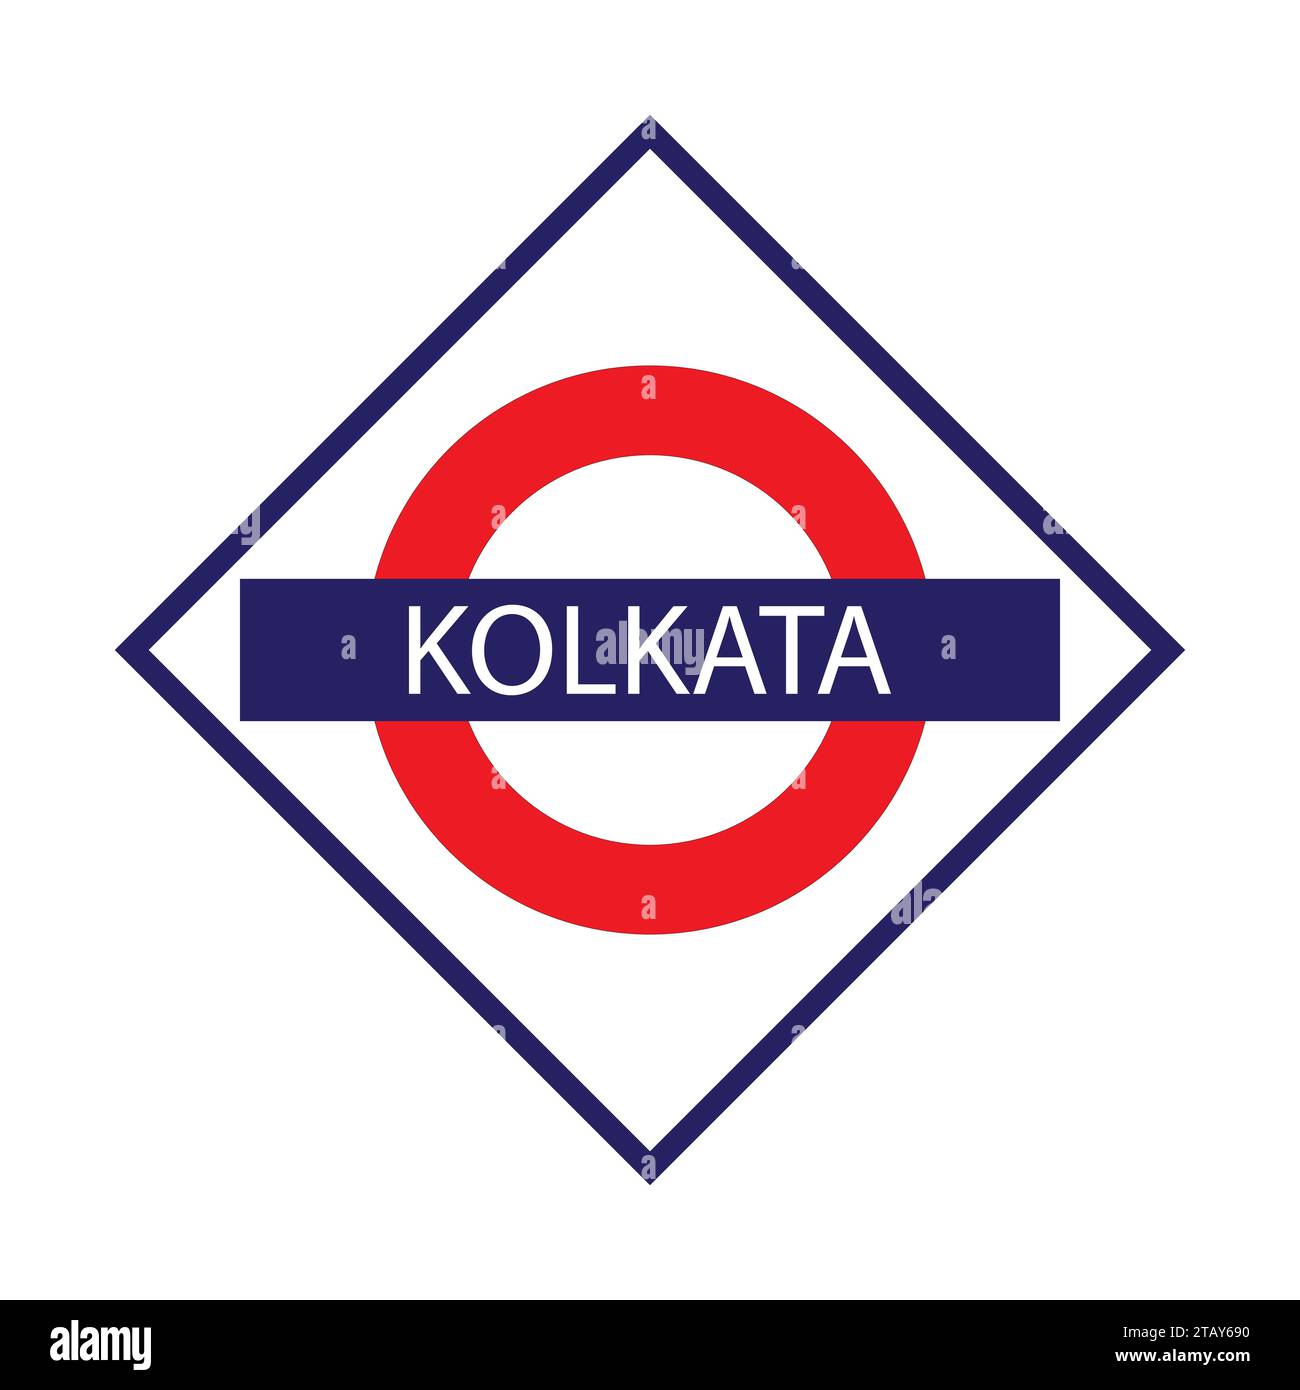 Kolkata junction railways name board isolated on white Stock Vector